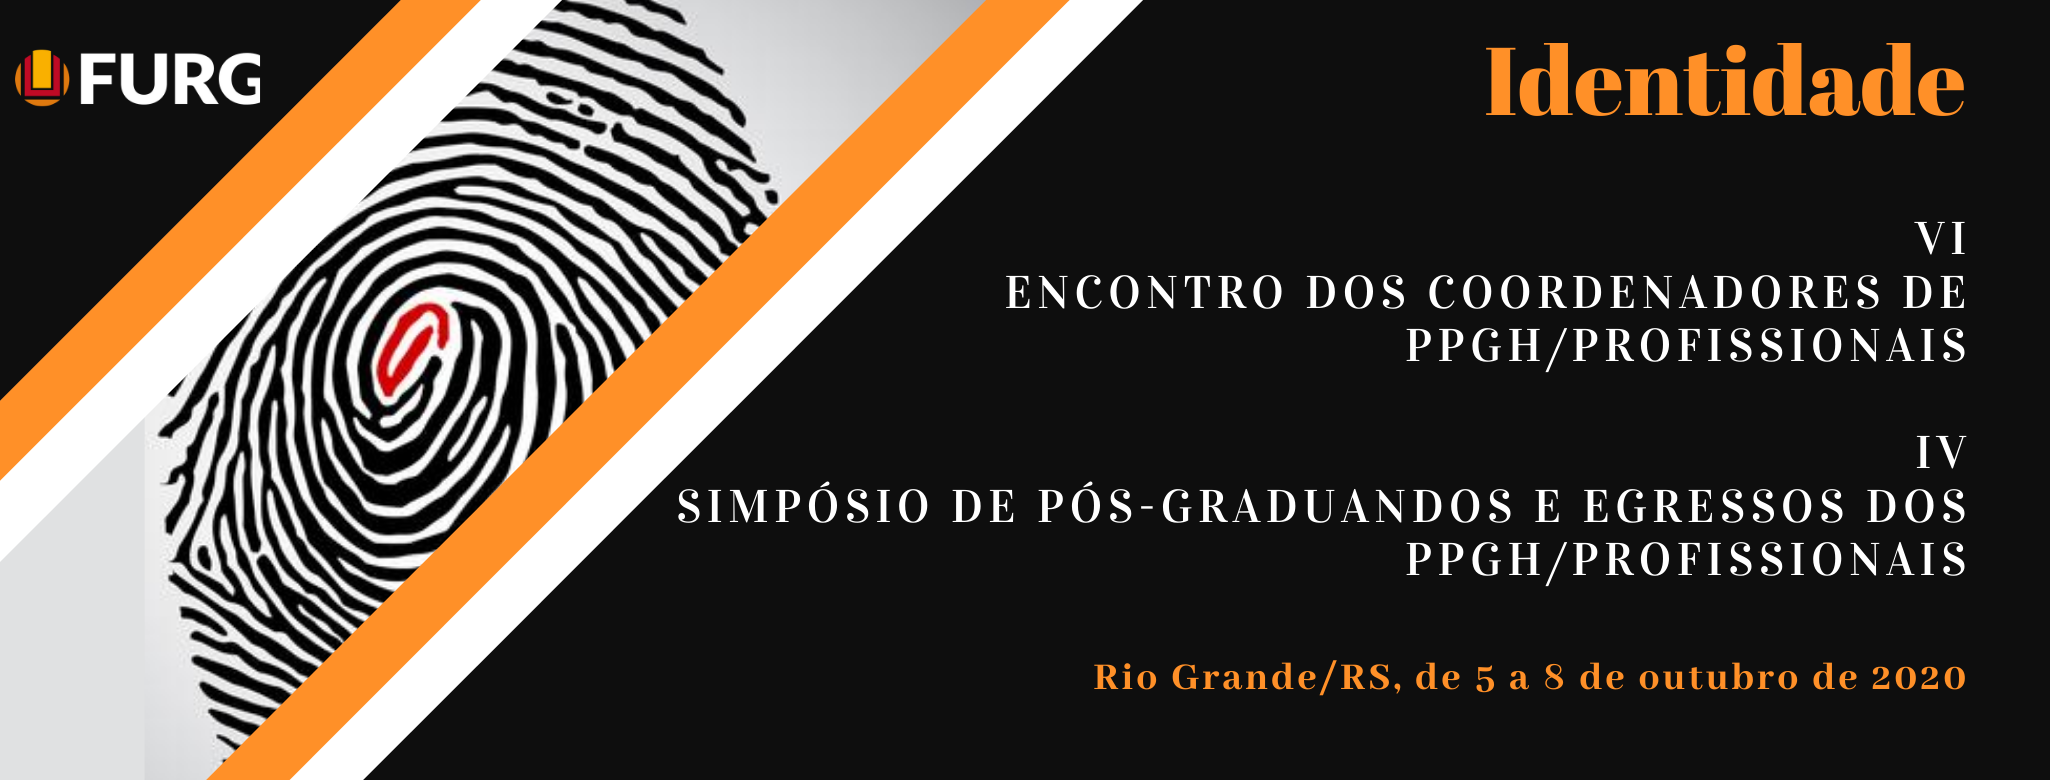 Identidade: VI Encontro dos Coordenadores de PPGH/Profissionais e IV Simpósio de Pós-Graduandos e Egressos dos PPGH/Profissionais - Universidade Federal do Rio Grande (FURG)